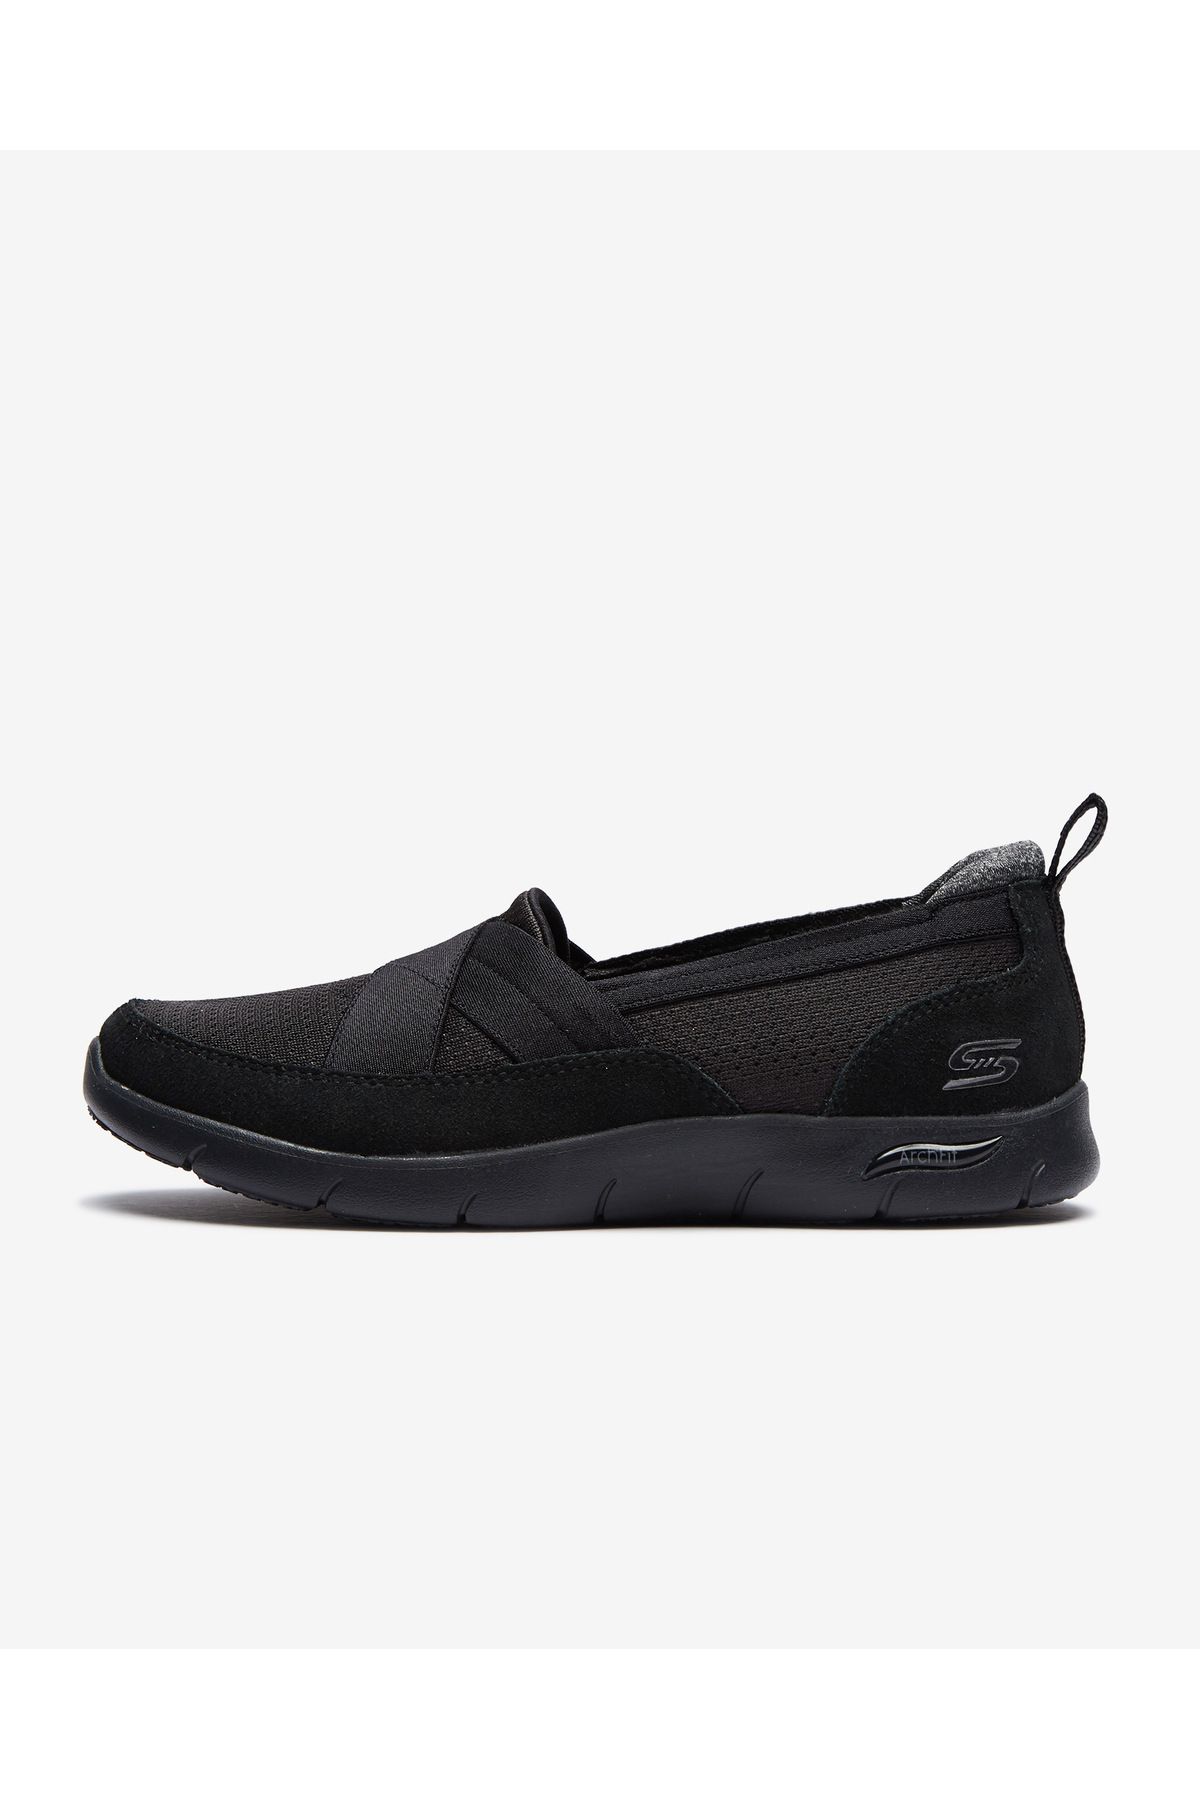 Skechers Arch Fit Refine Kadın Siyah Günlük Ayakkabı 104270 Bbk